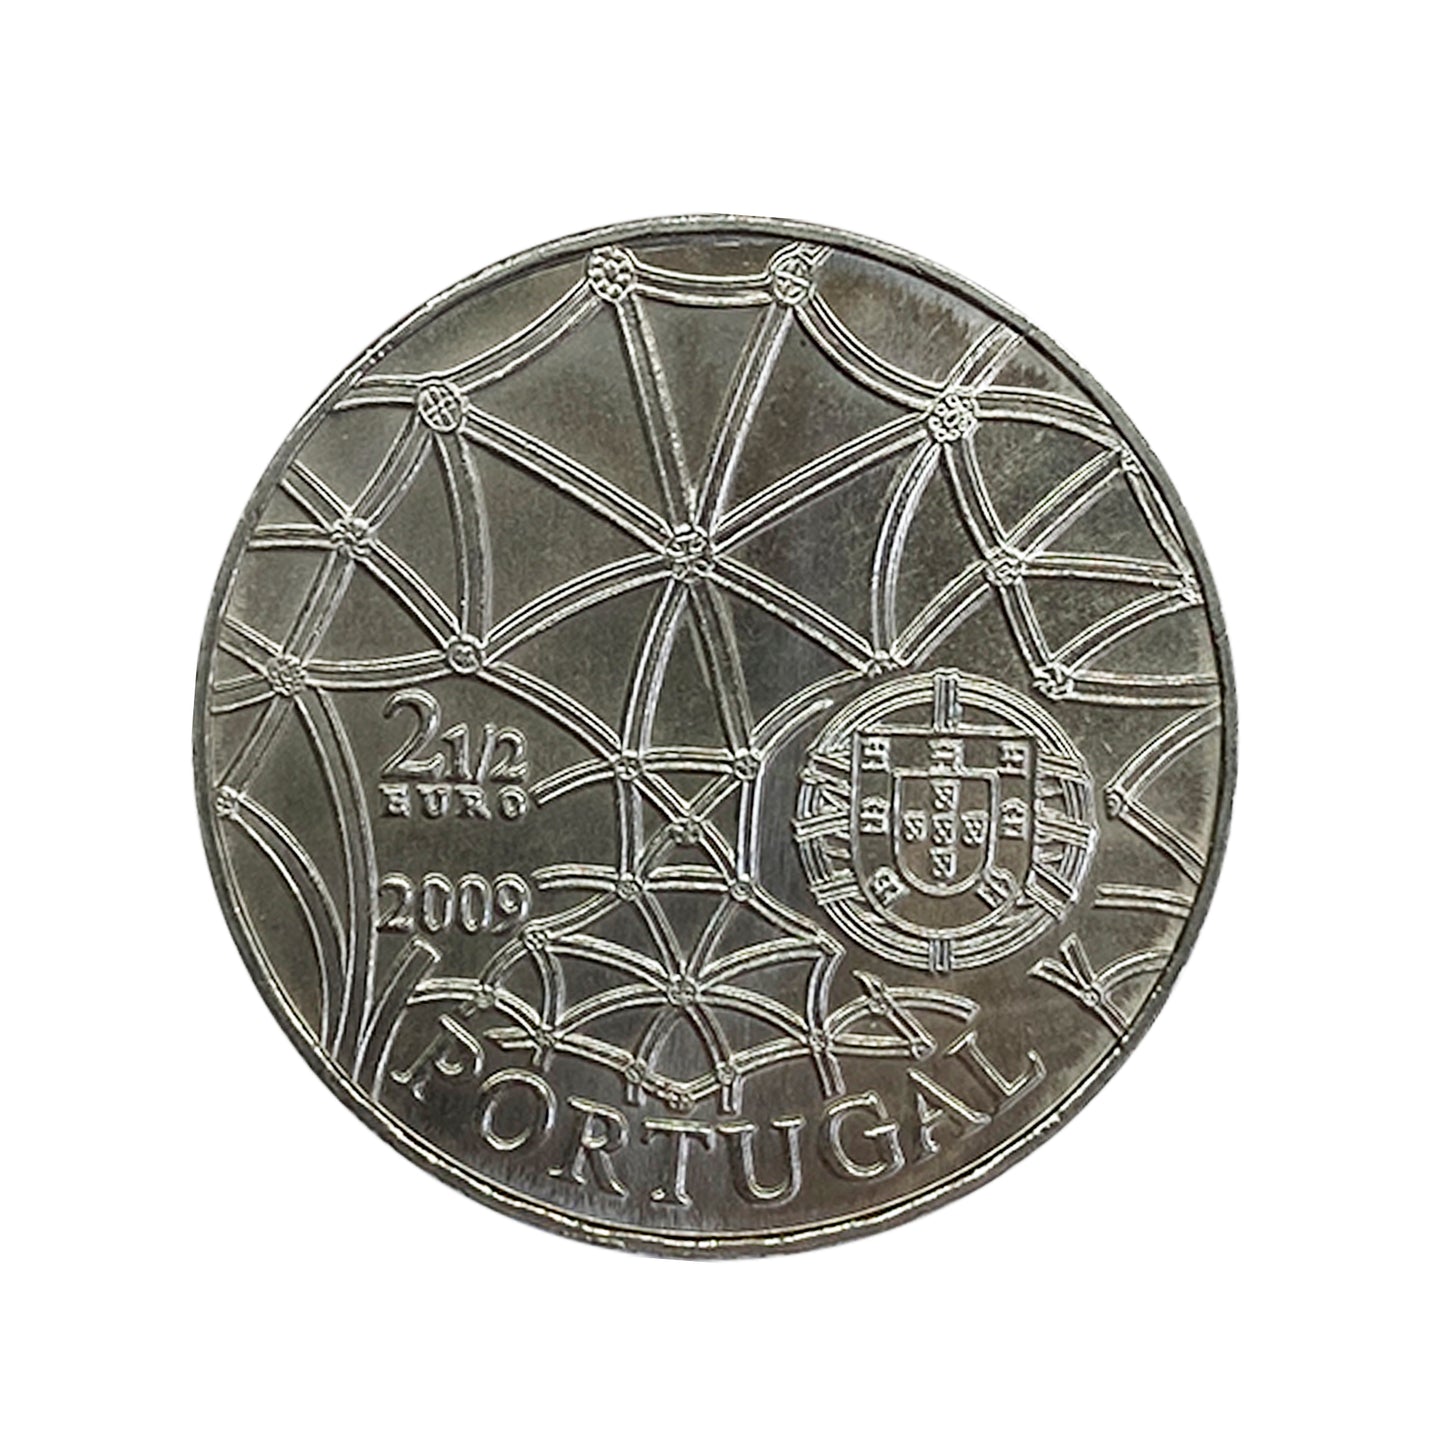 Portugal - Moneda 2,5 euros 2009 - Monasterio de Los Jerónimos